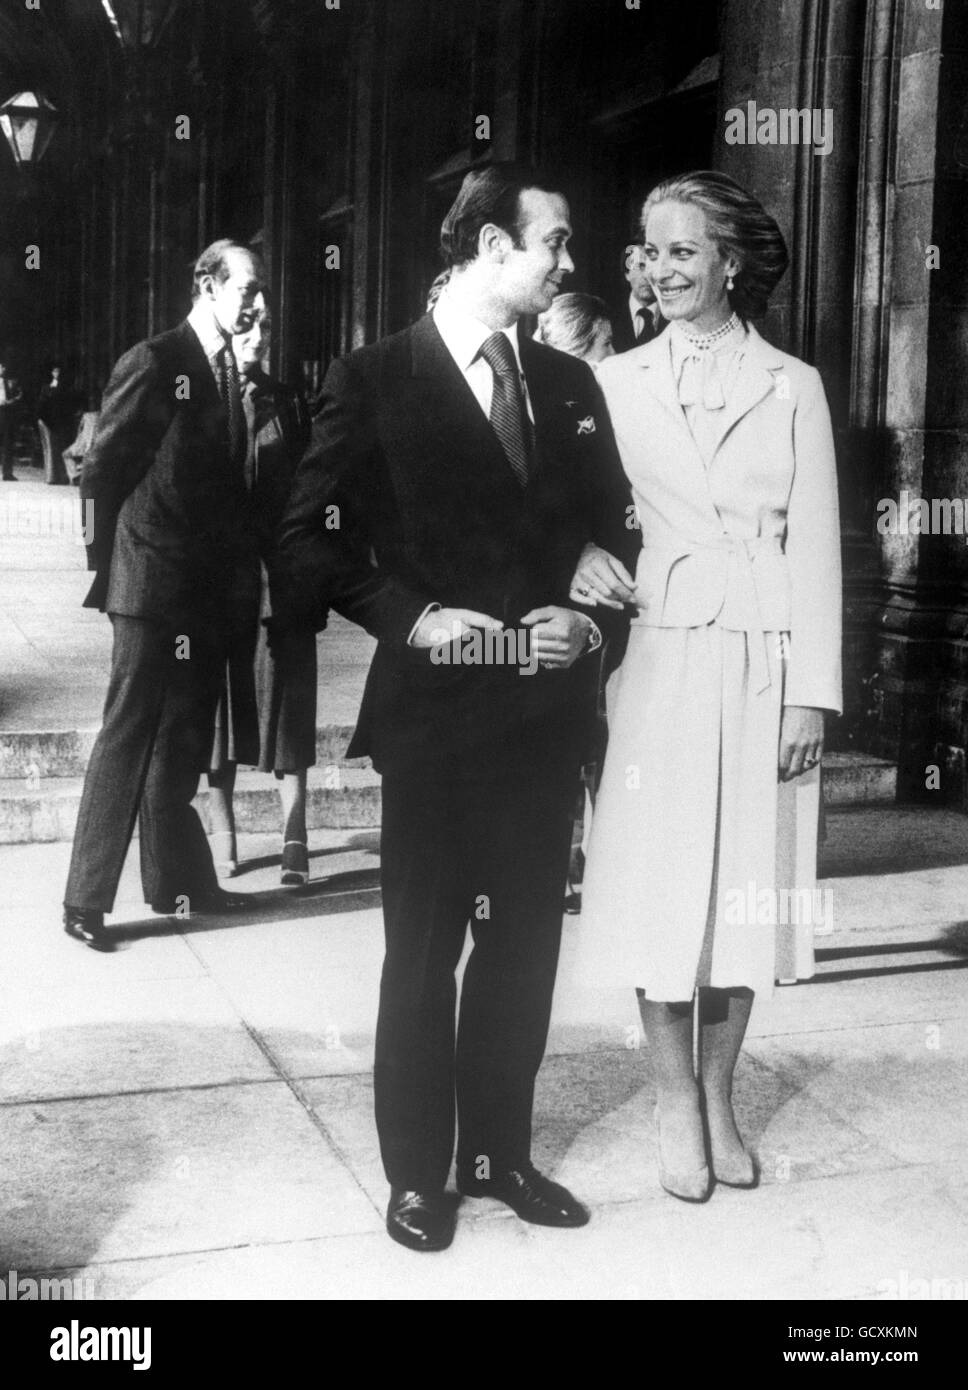 El príncipe Michael de Kent se casaba con la baronesa Marie-Christine von Reibnitz en una ceremonia civil en el Ayuntamiento de Viena. Foto de stock